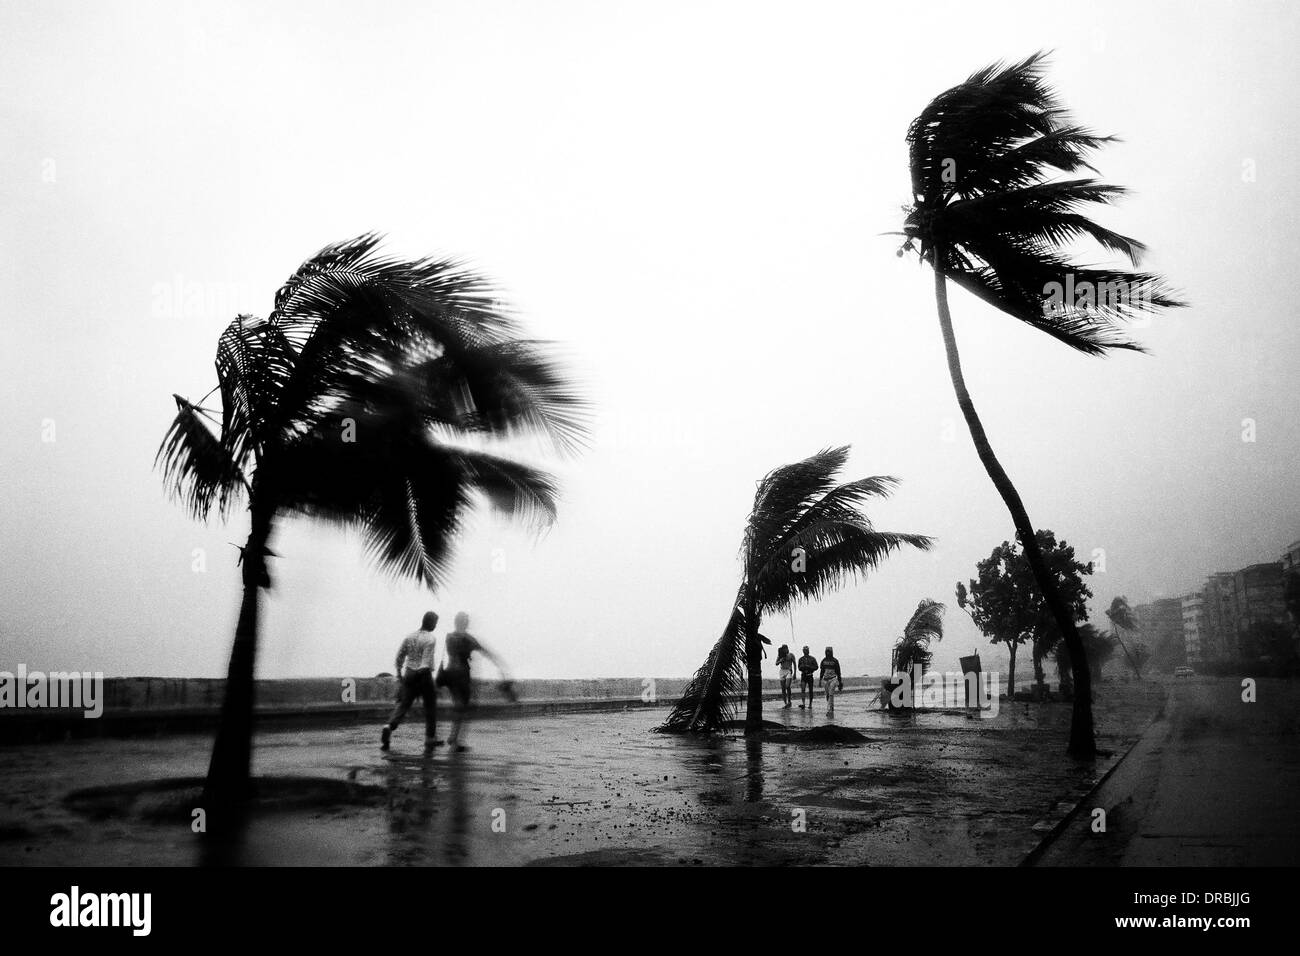 Les palmiers se balançant dans le vent de la mousson, Marine Drive, Mumbai, Maharashtra, Inde, 1989 Banque D'Images